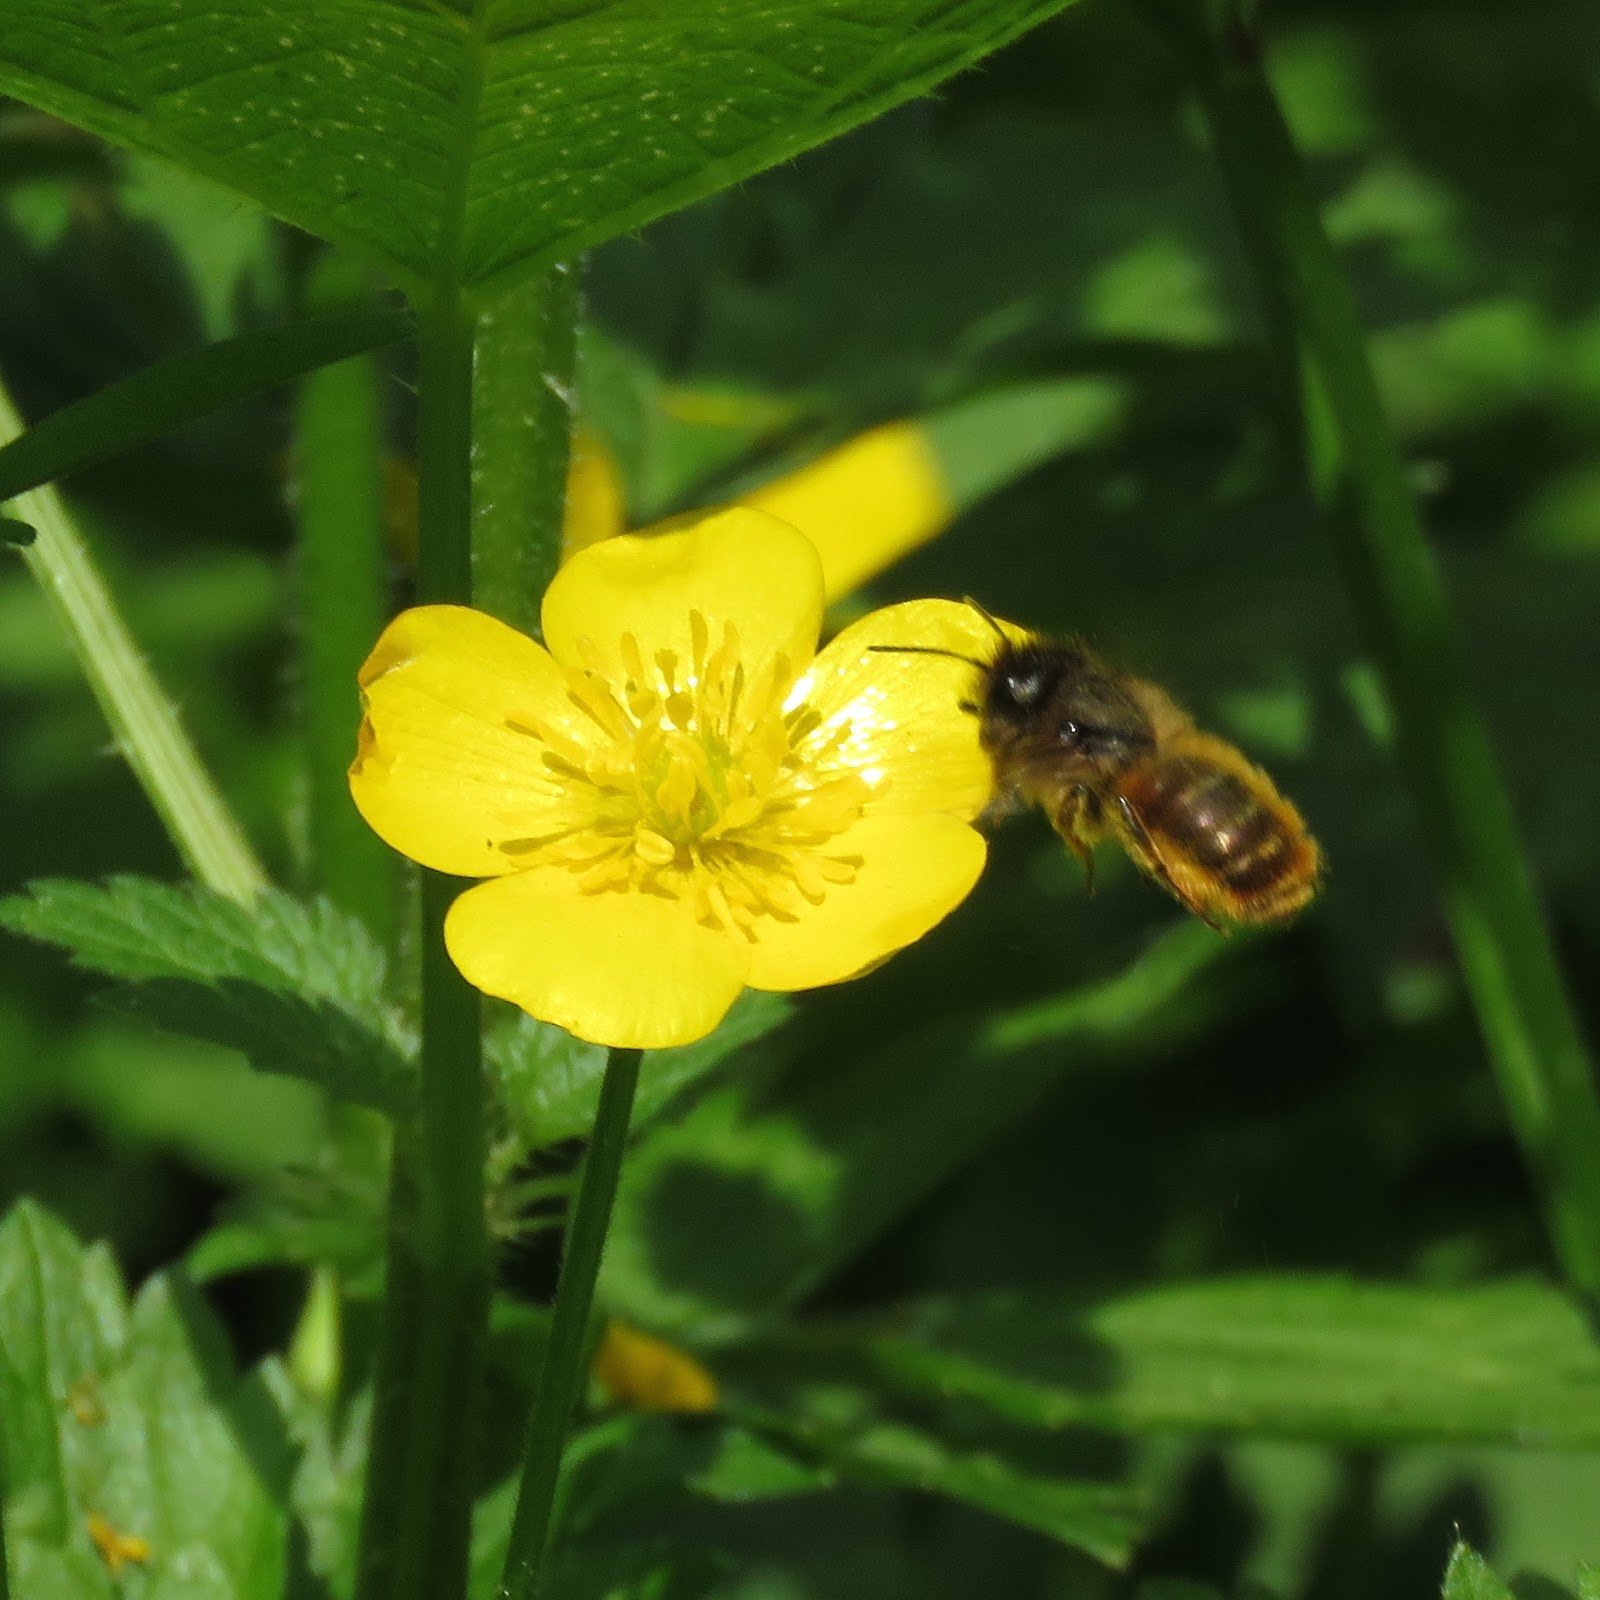 BugBlog: A solitary bee quartet